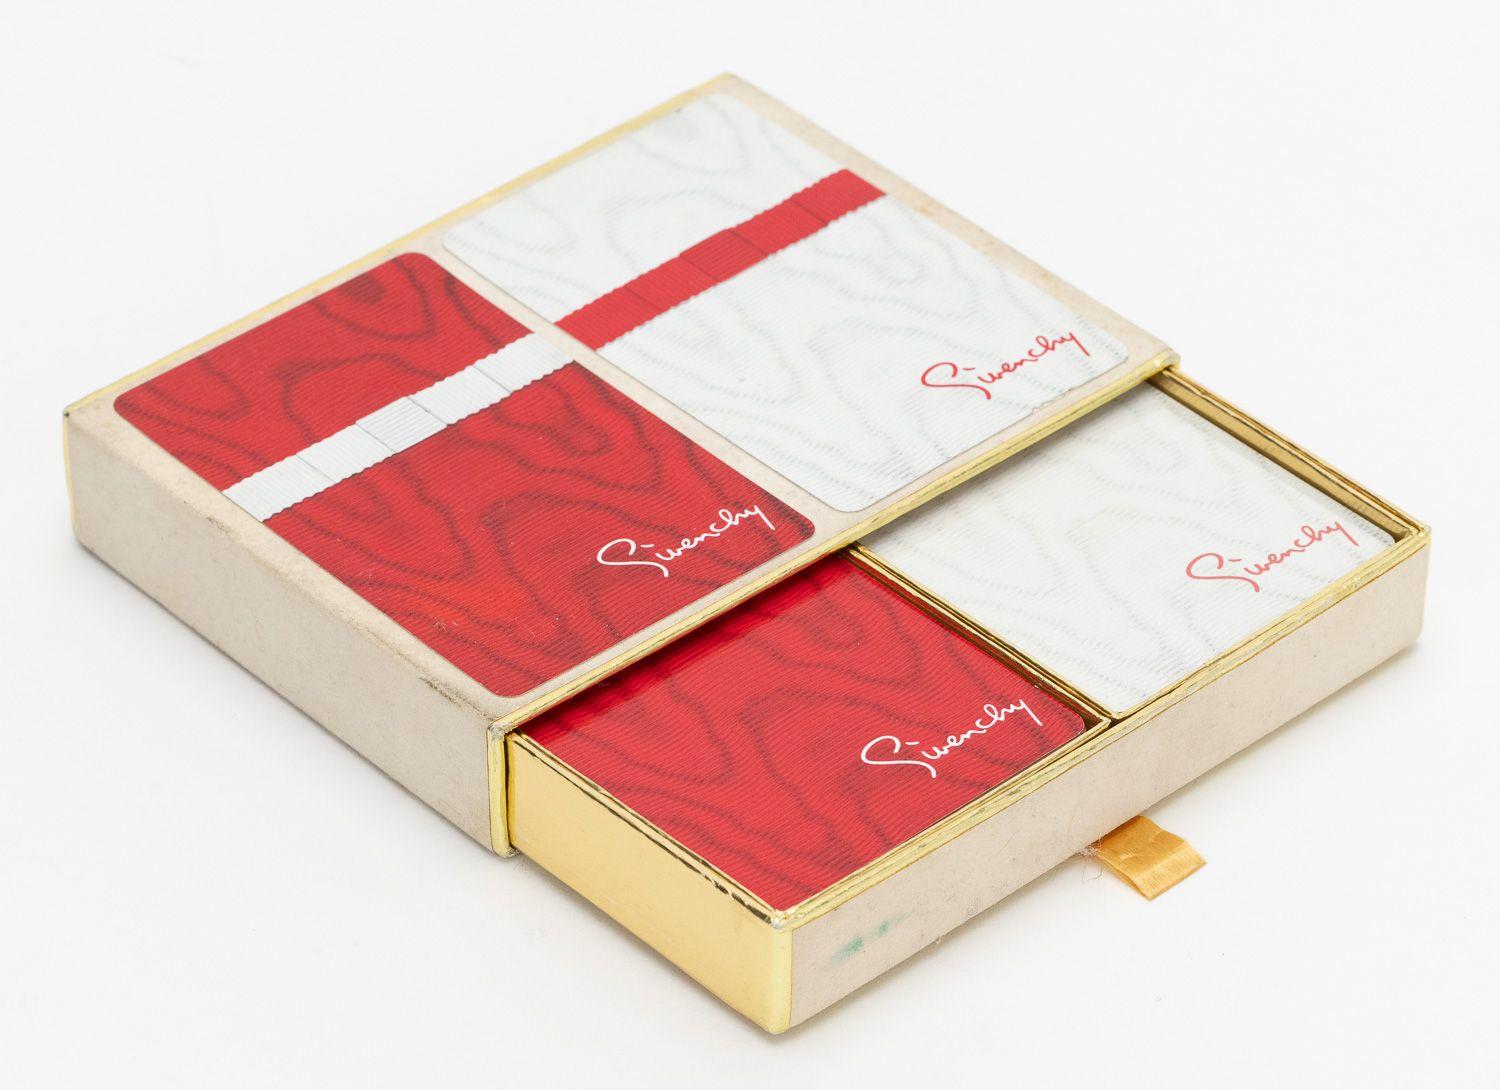 Givenchy 2 Decks mit roten und weißen Vintage-Spielkarten.
Kommt mit Originalverpackung.